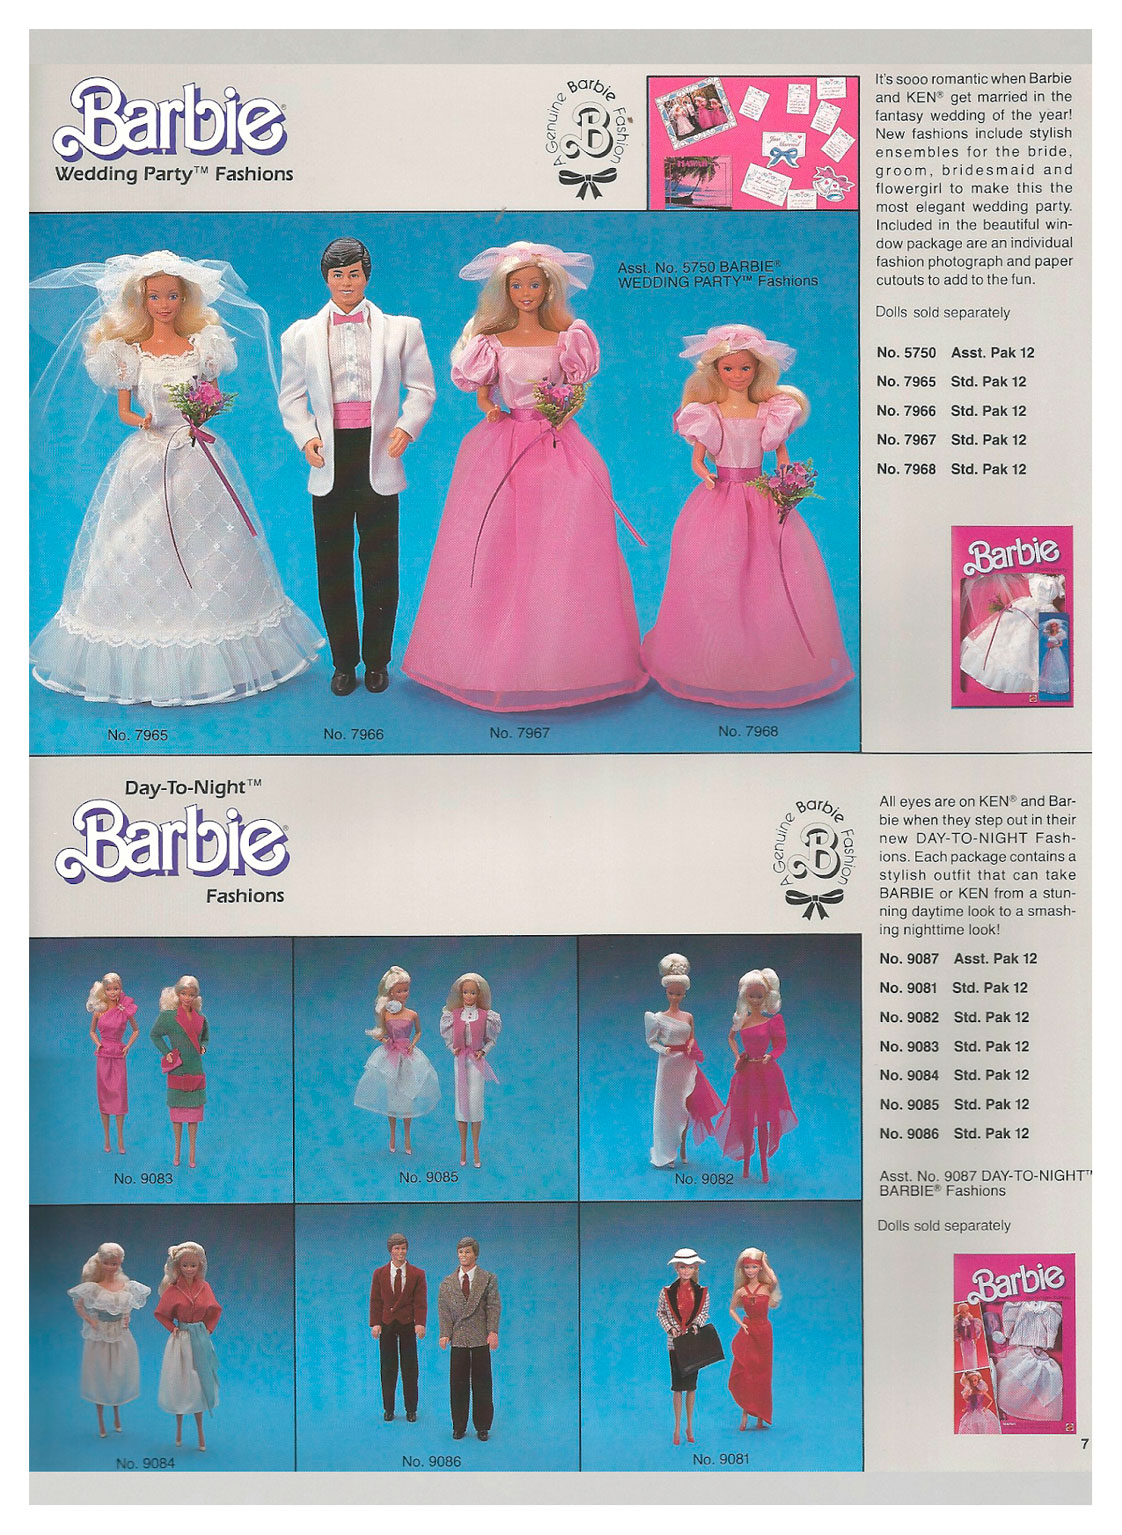 From Mattel Toys 1985 Spring Program